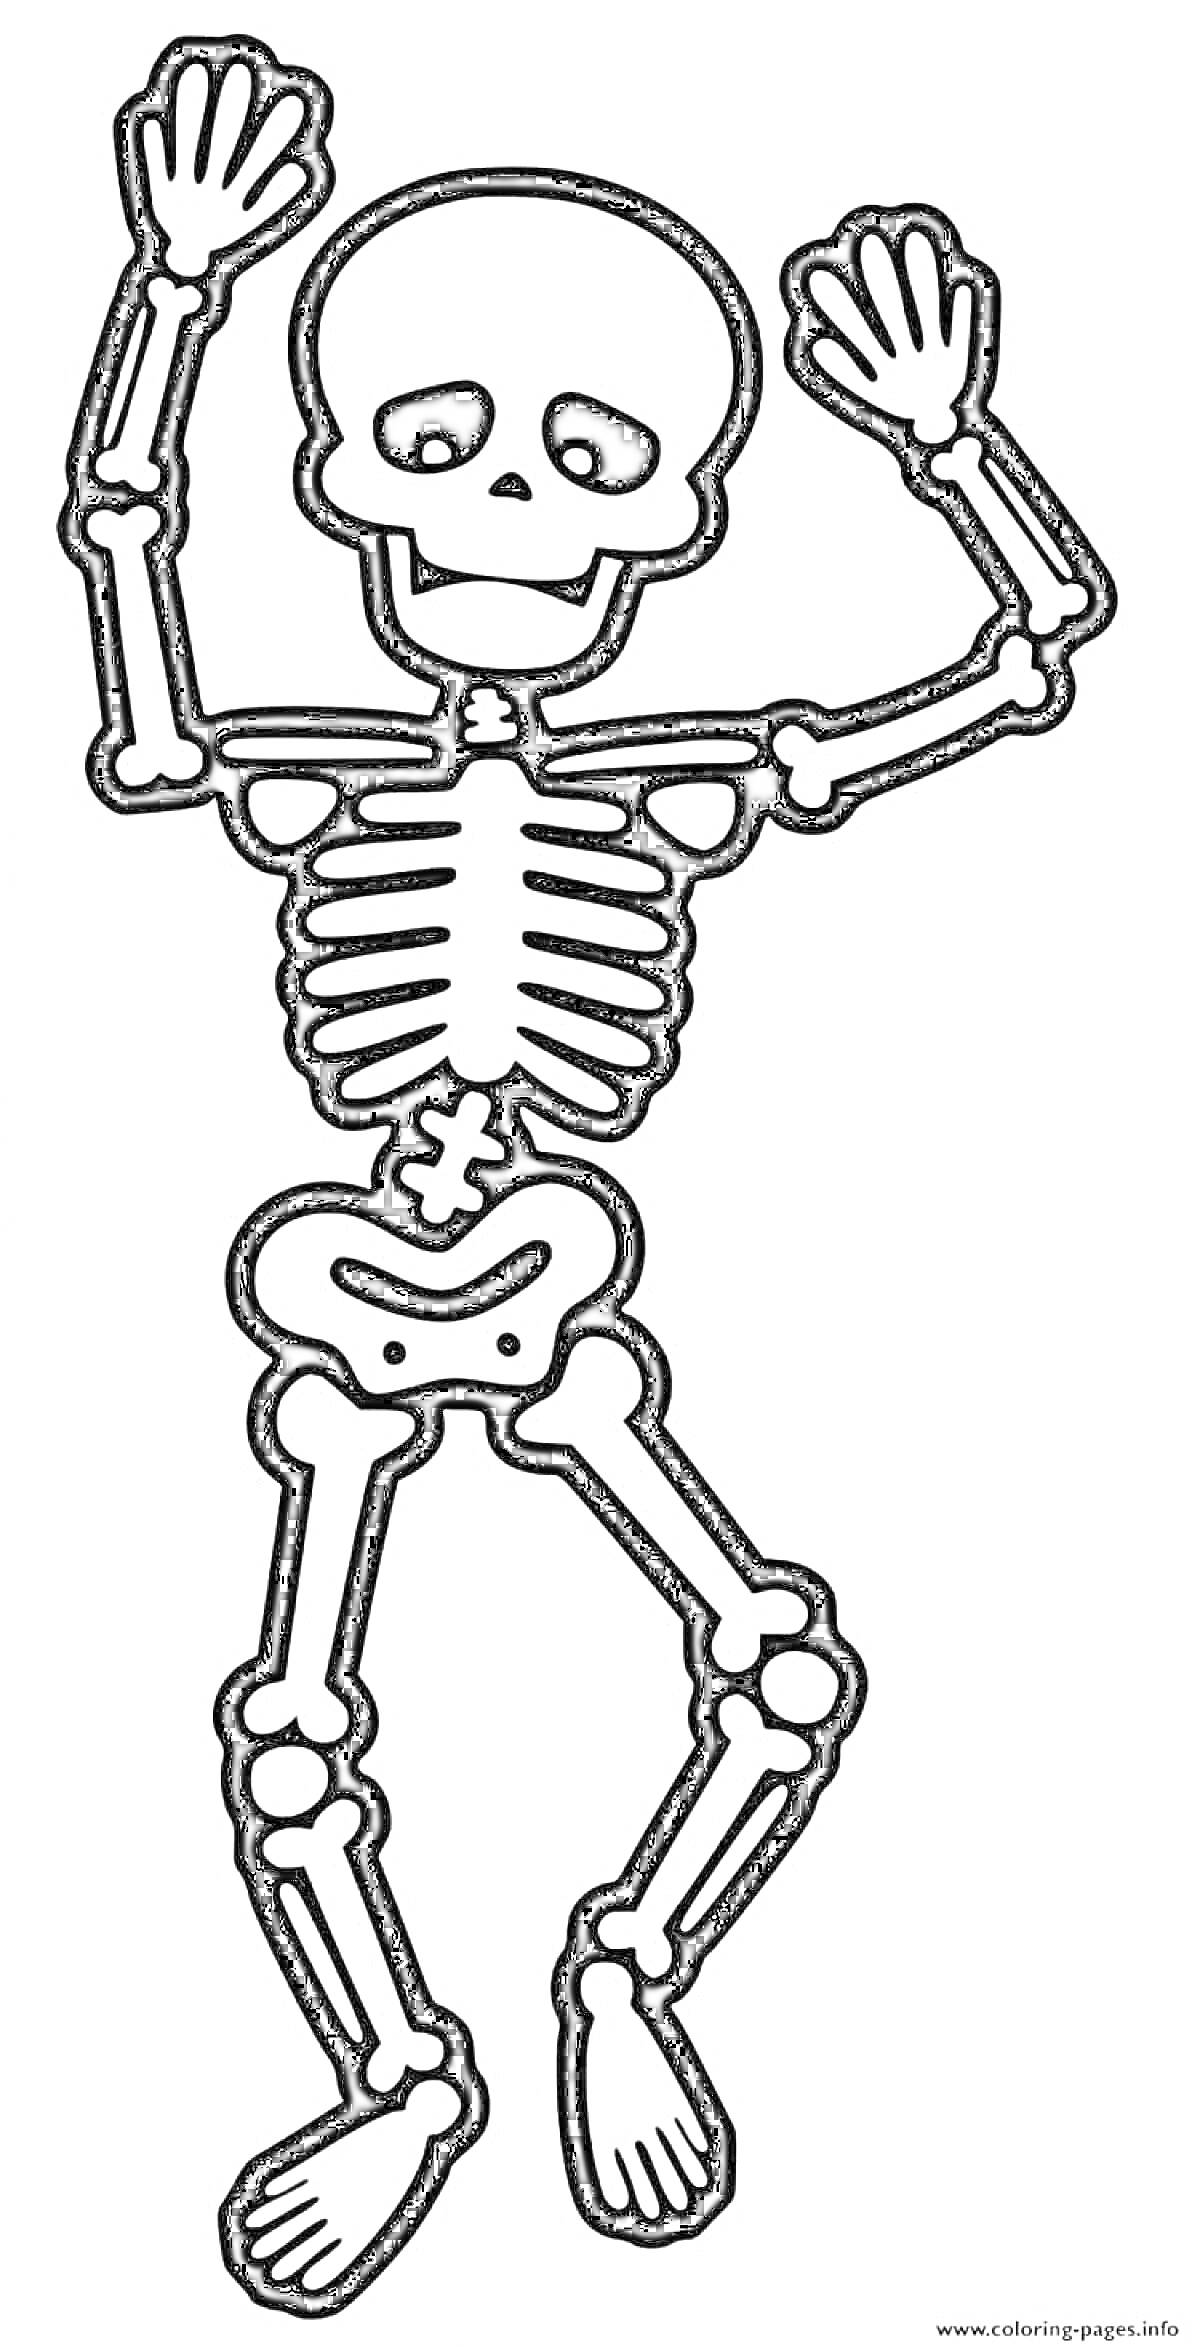 скелет в танцующей позе, анатомические элементы включают череп, ребра, позвоночник, руки, запястья, кисти, бедренные кости, голени и стопы.